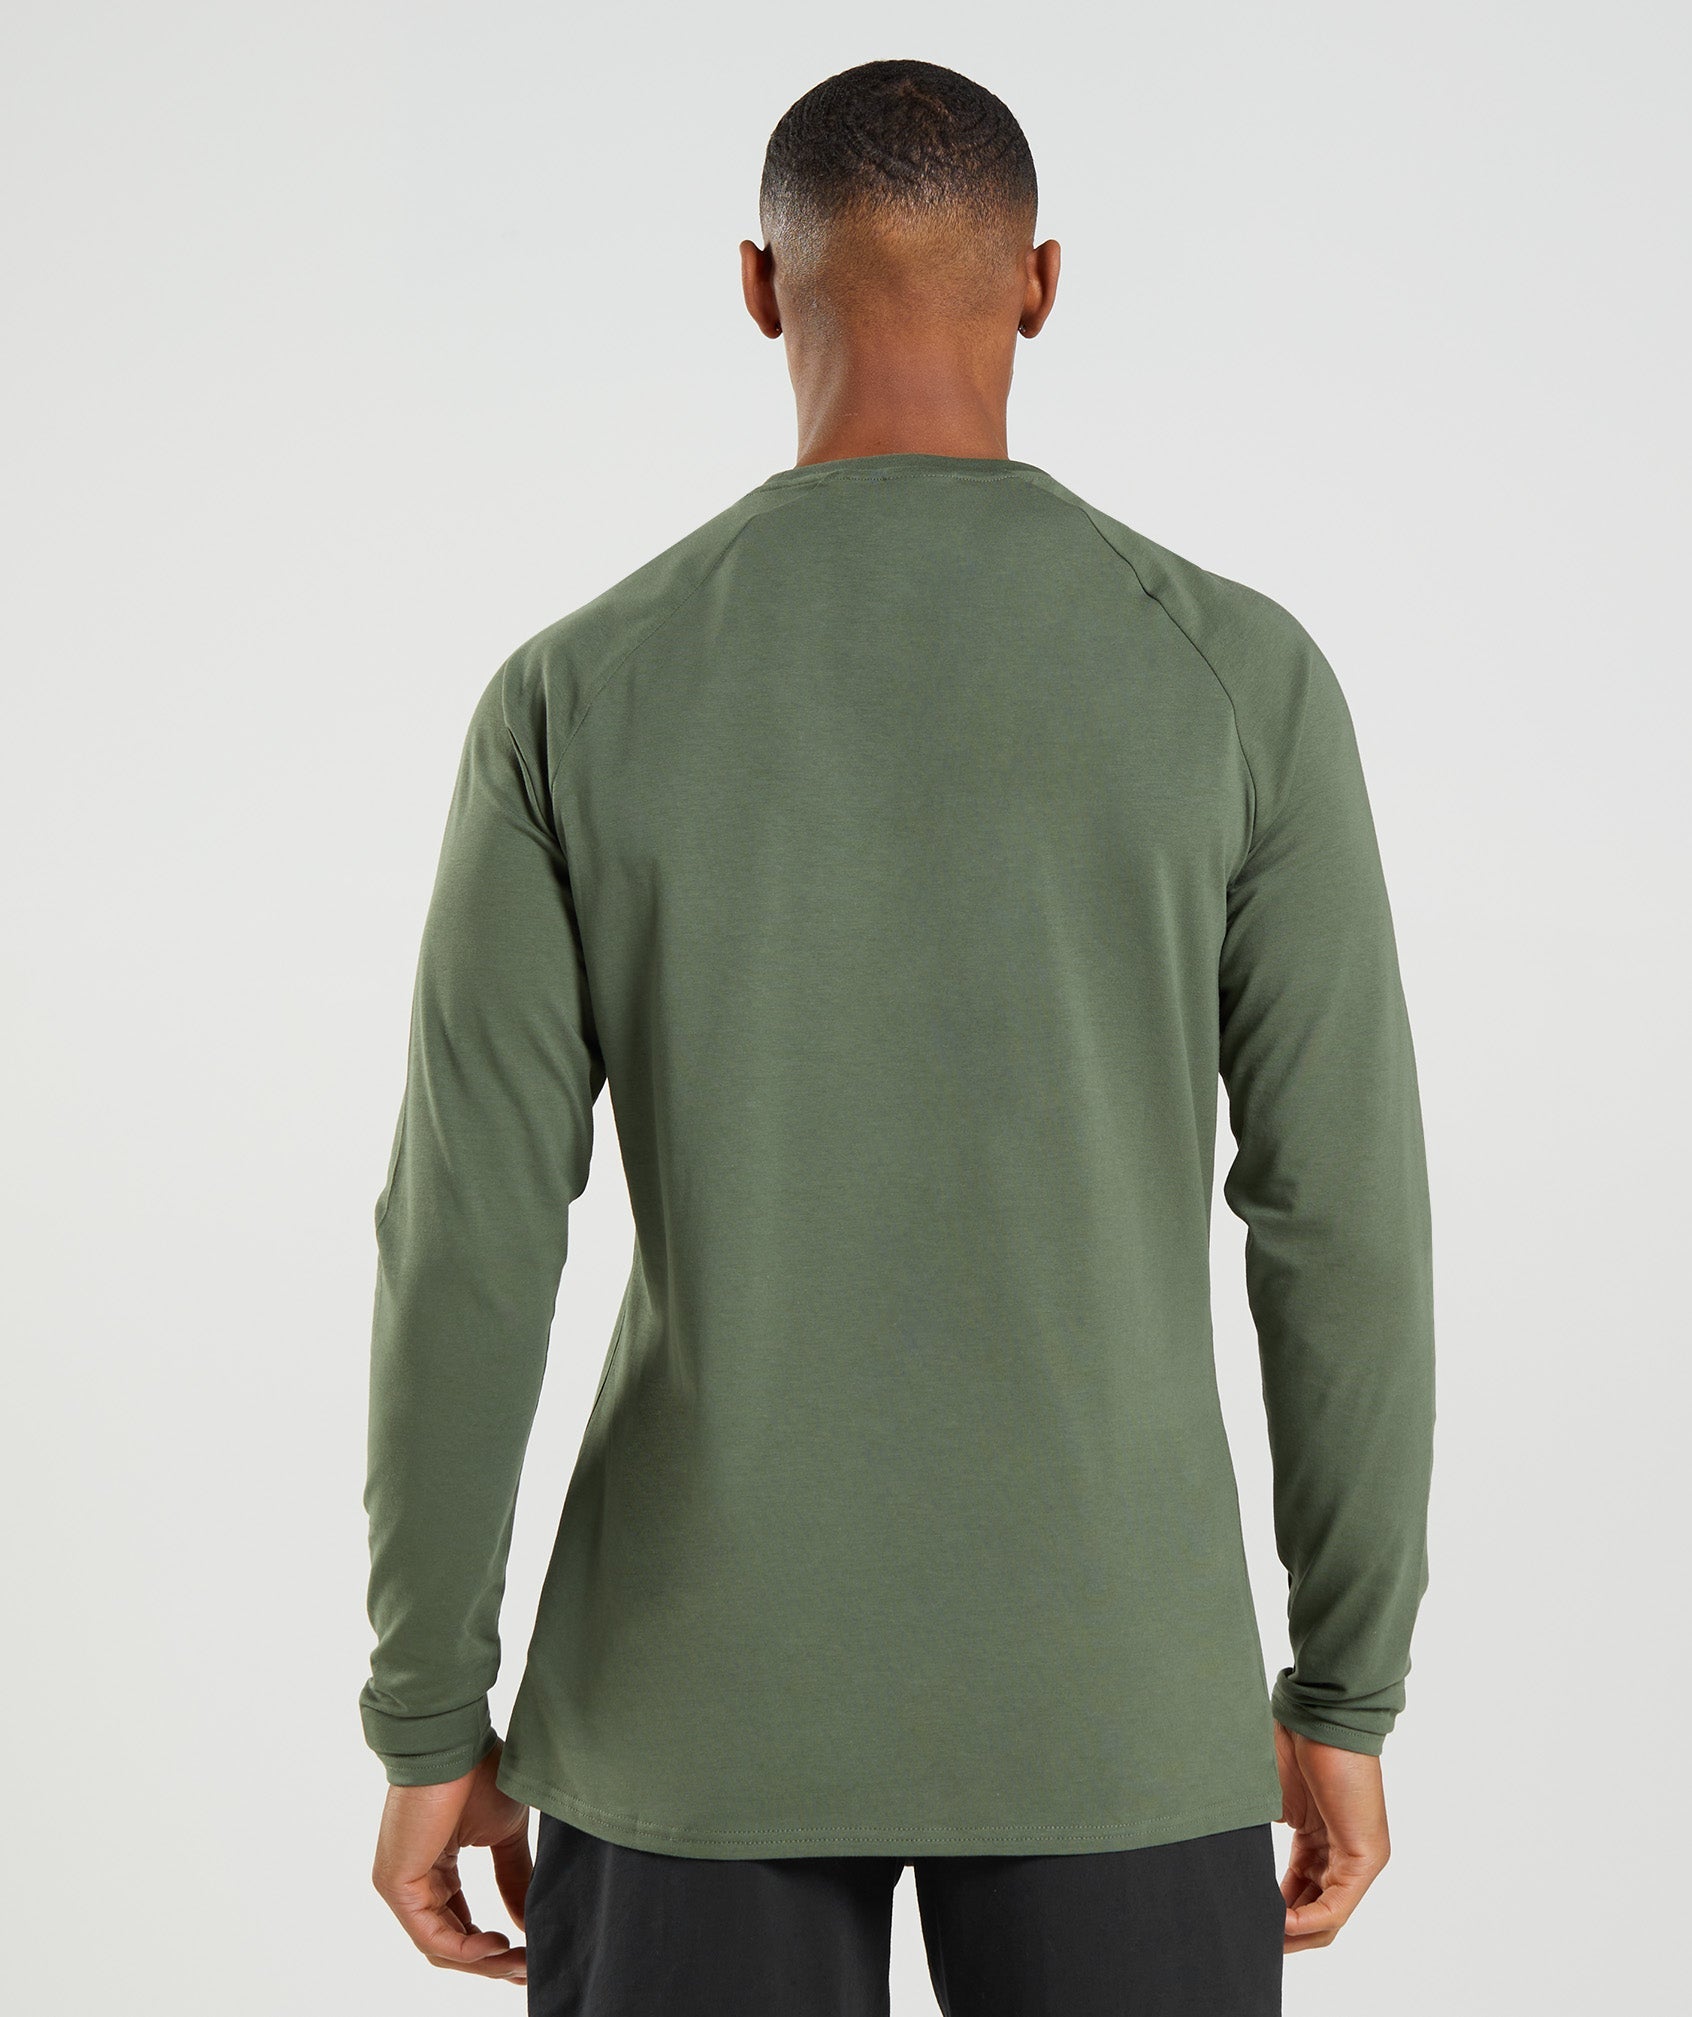 Apollo Camo Long Sleeve T-Shirt in Camo Green - view 2